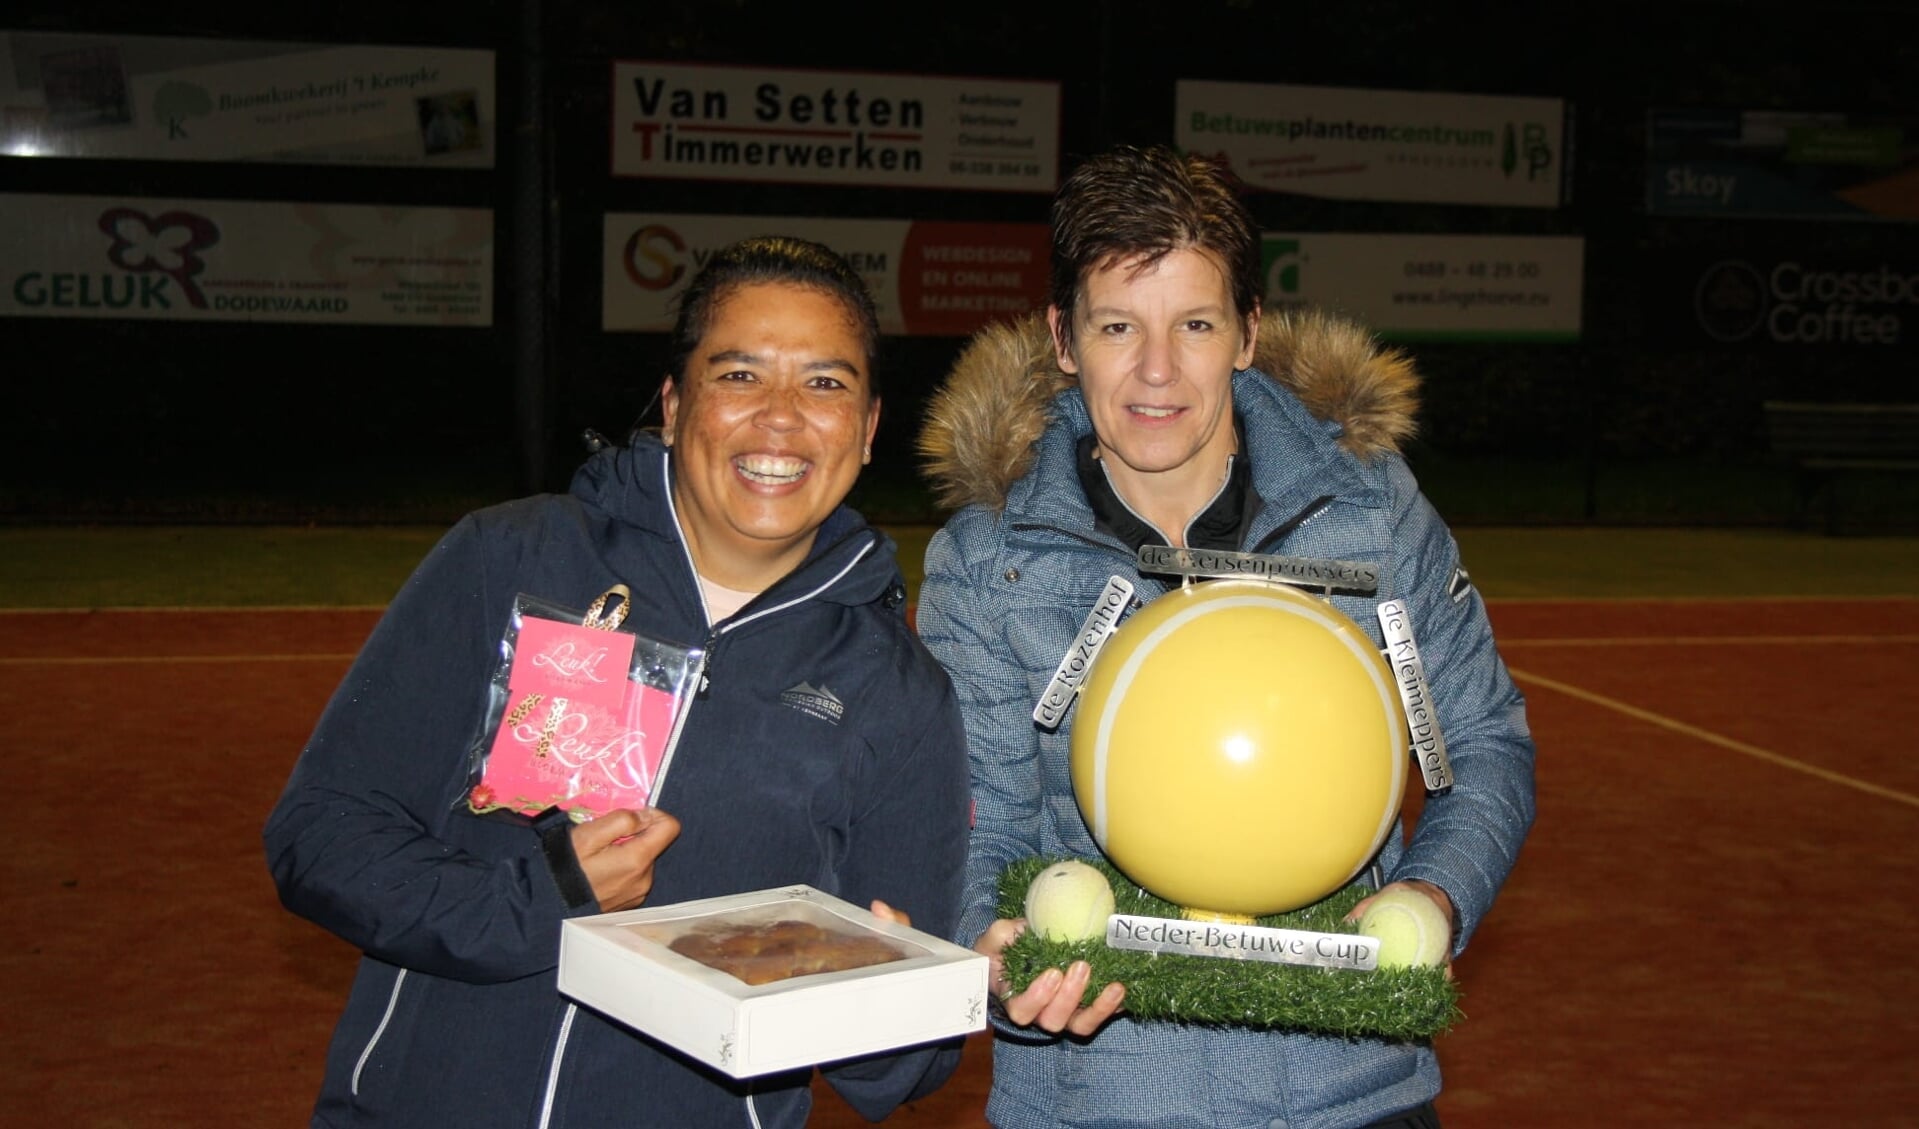 Twee van de trotse winnaars uit Dodewaard (Maresa Rutasouw (l) en Sylvia Elings) met de Neder-Betuwe Cup.